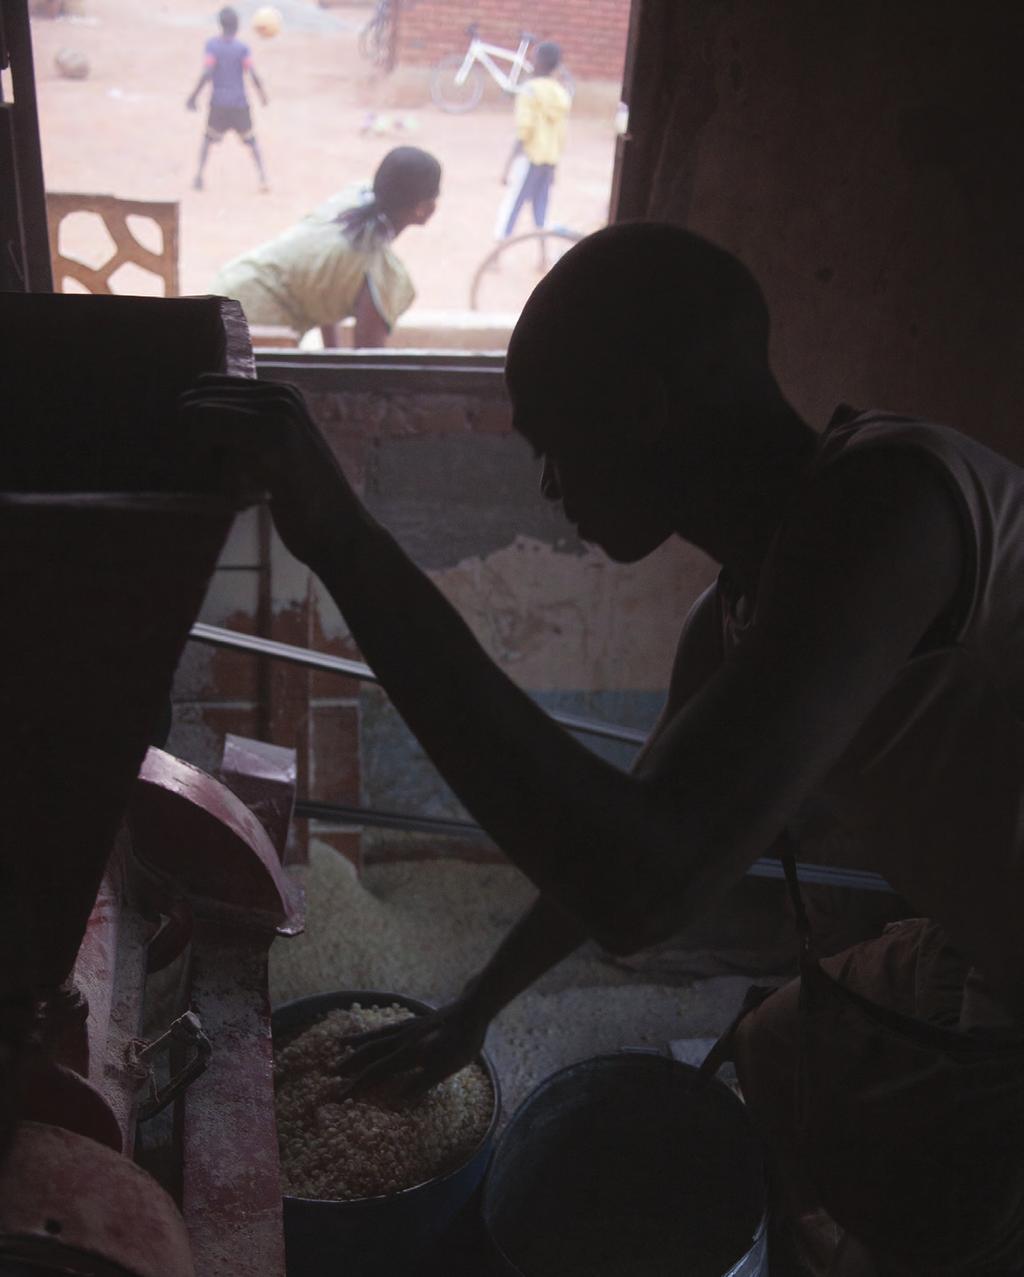 MALAWI A farmer is grinding corn.